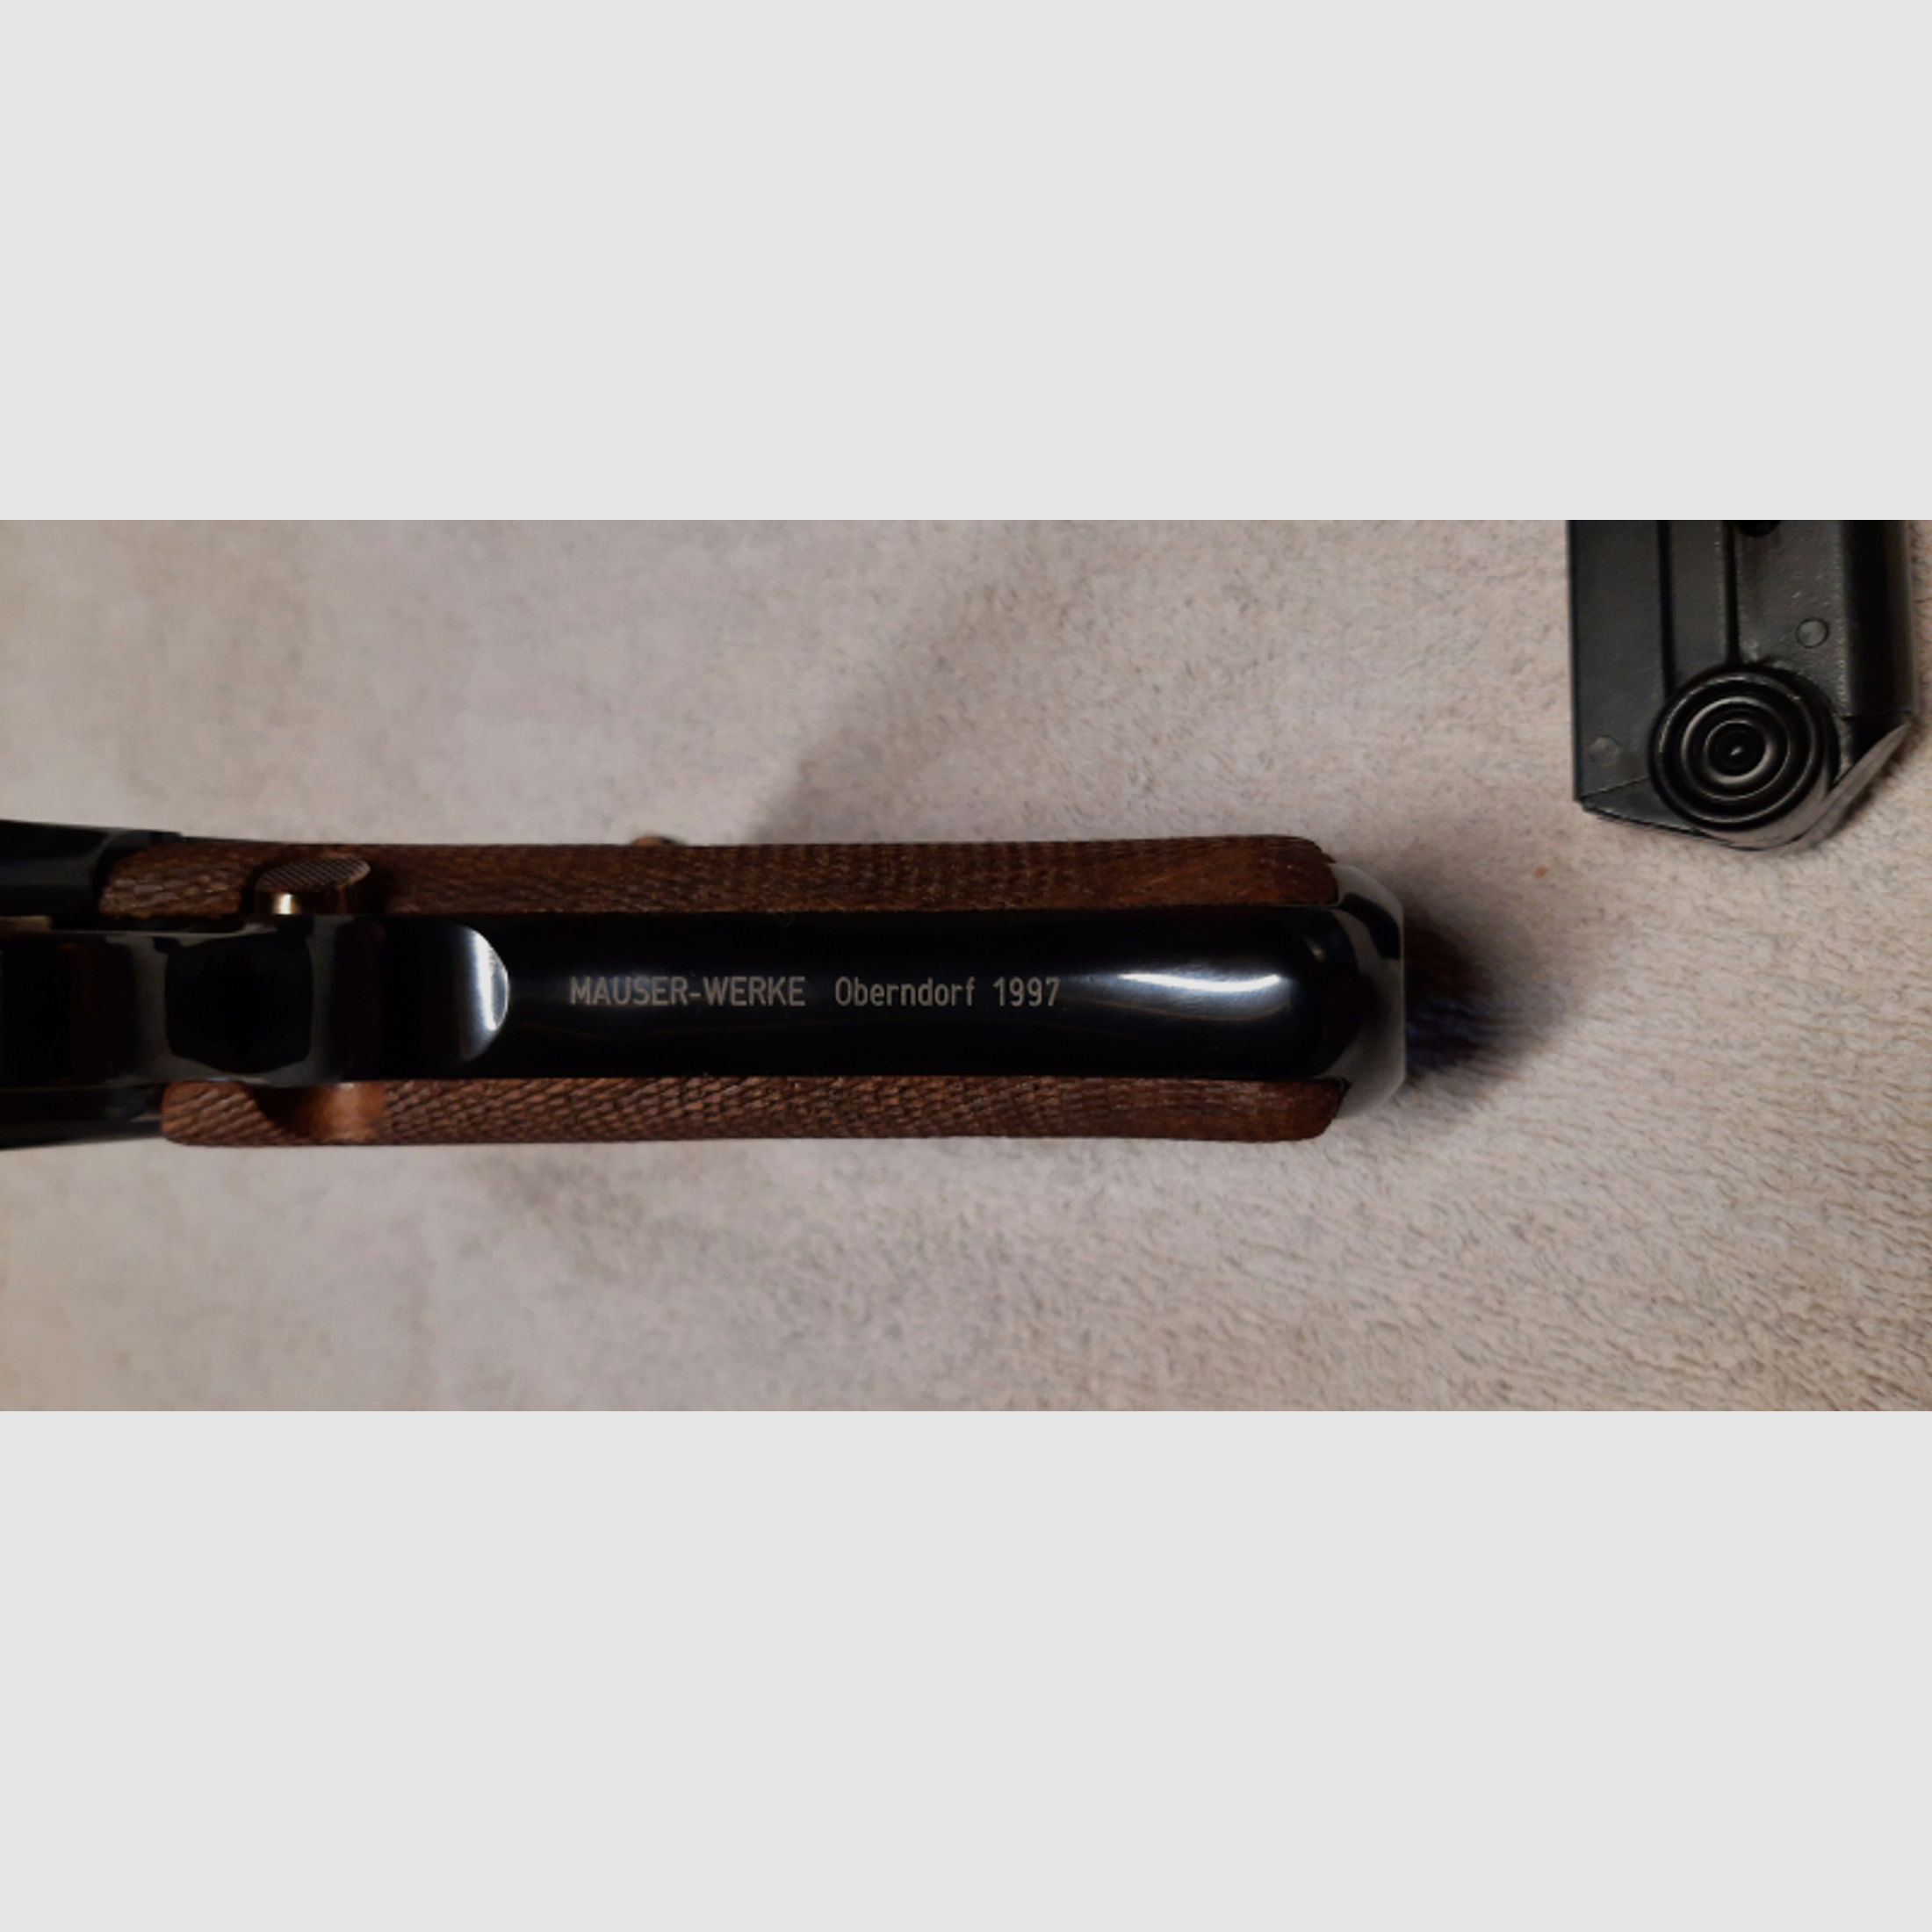 9mm Luger, Mauser-Werke Oberndorf P 08 mit Wechselsystem .22lfb